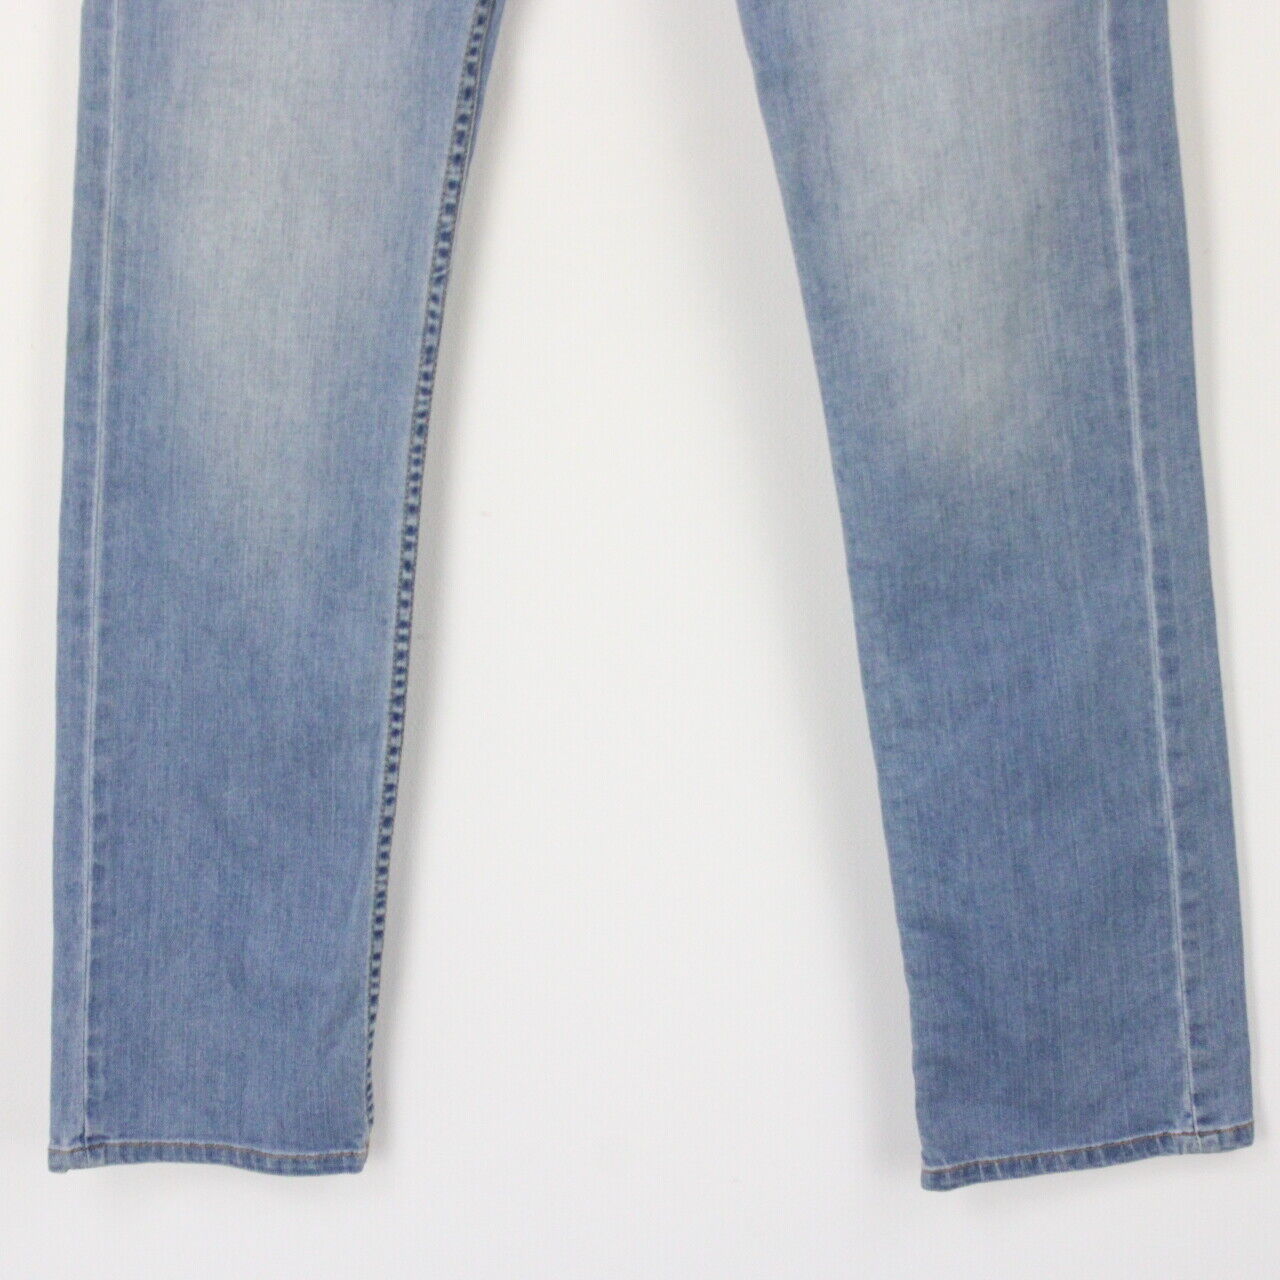 Mens LEVIS 511 Slim Jeans Light Blue | W30 L32